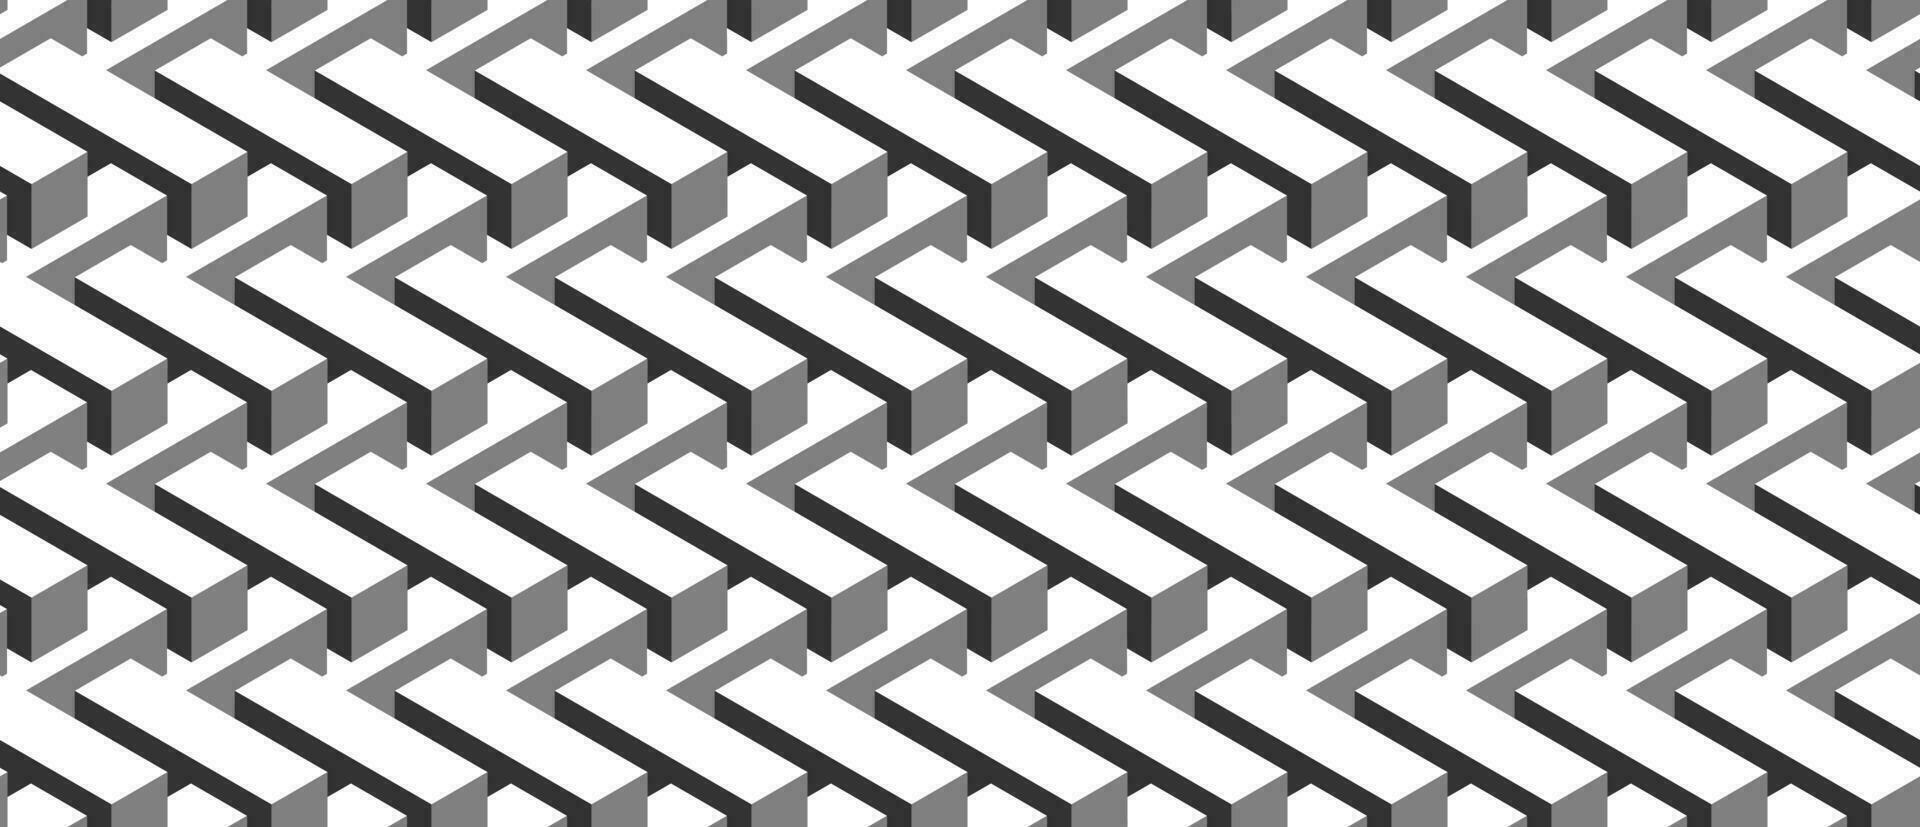 naadloos meetkundig patroon. vector achtergrond gemaakt van kubussen in isometrie. herhalen meetkundig vormen in zwart en wit.